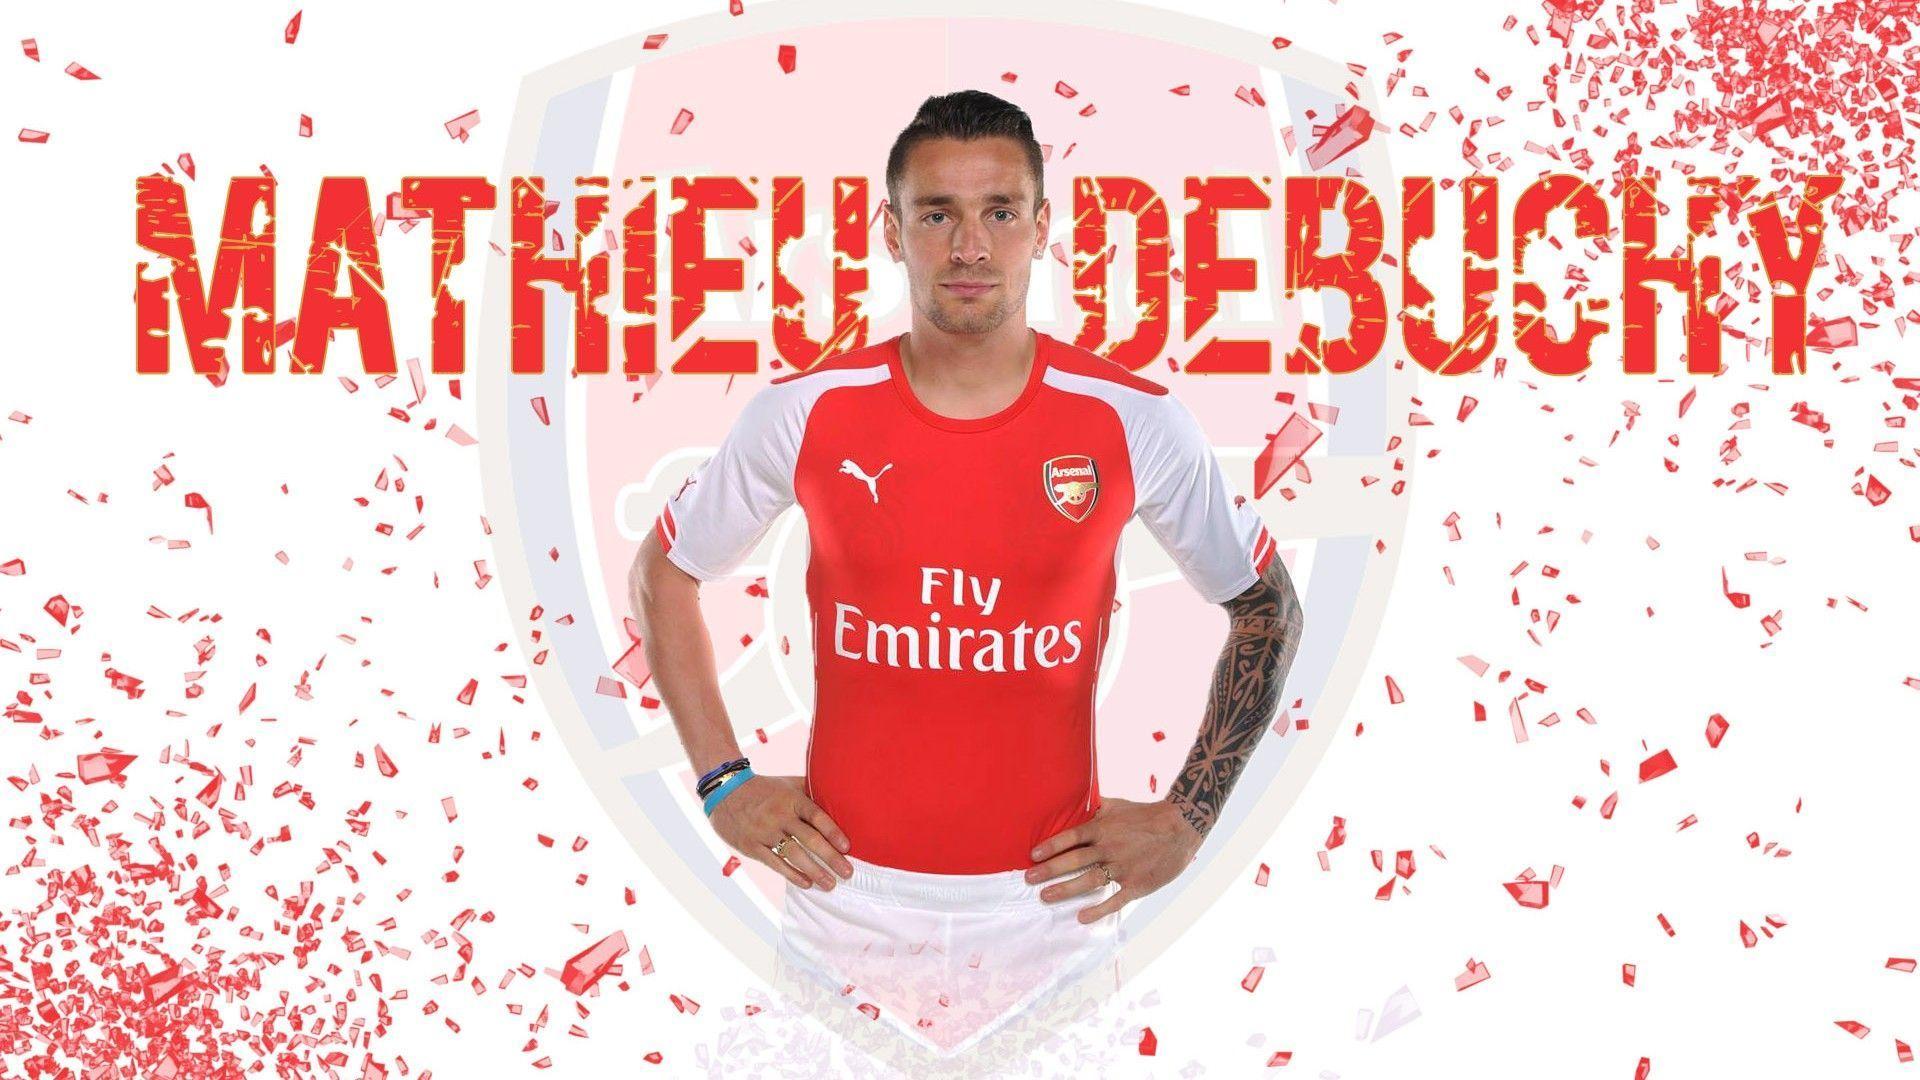 Mathieu Debuchy 2014 Arsenal FC Desktop Wallpaper. New Football